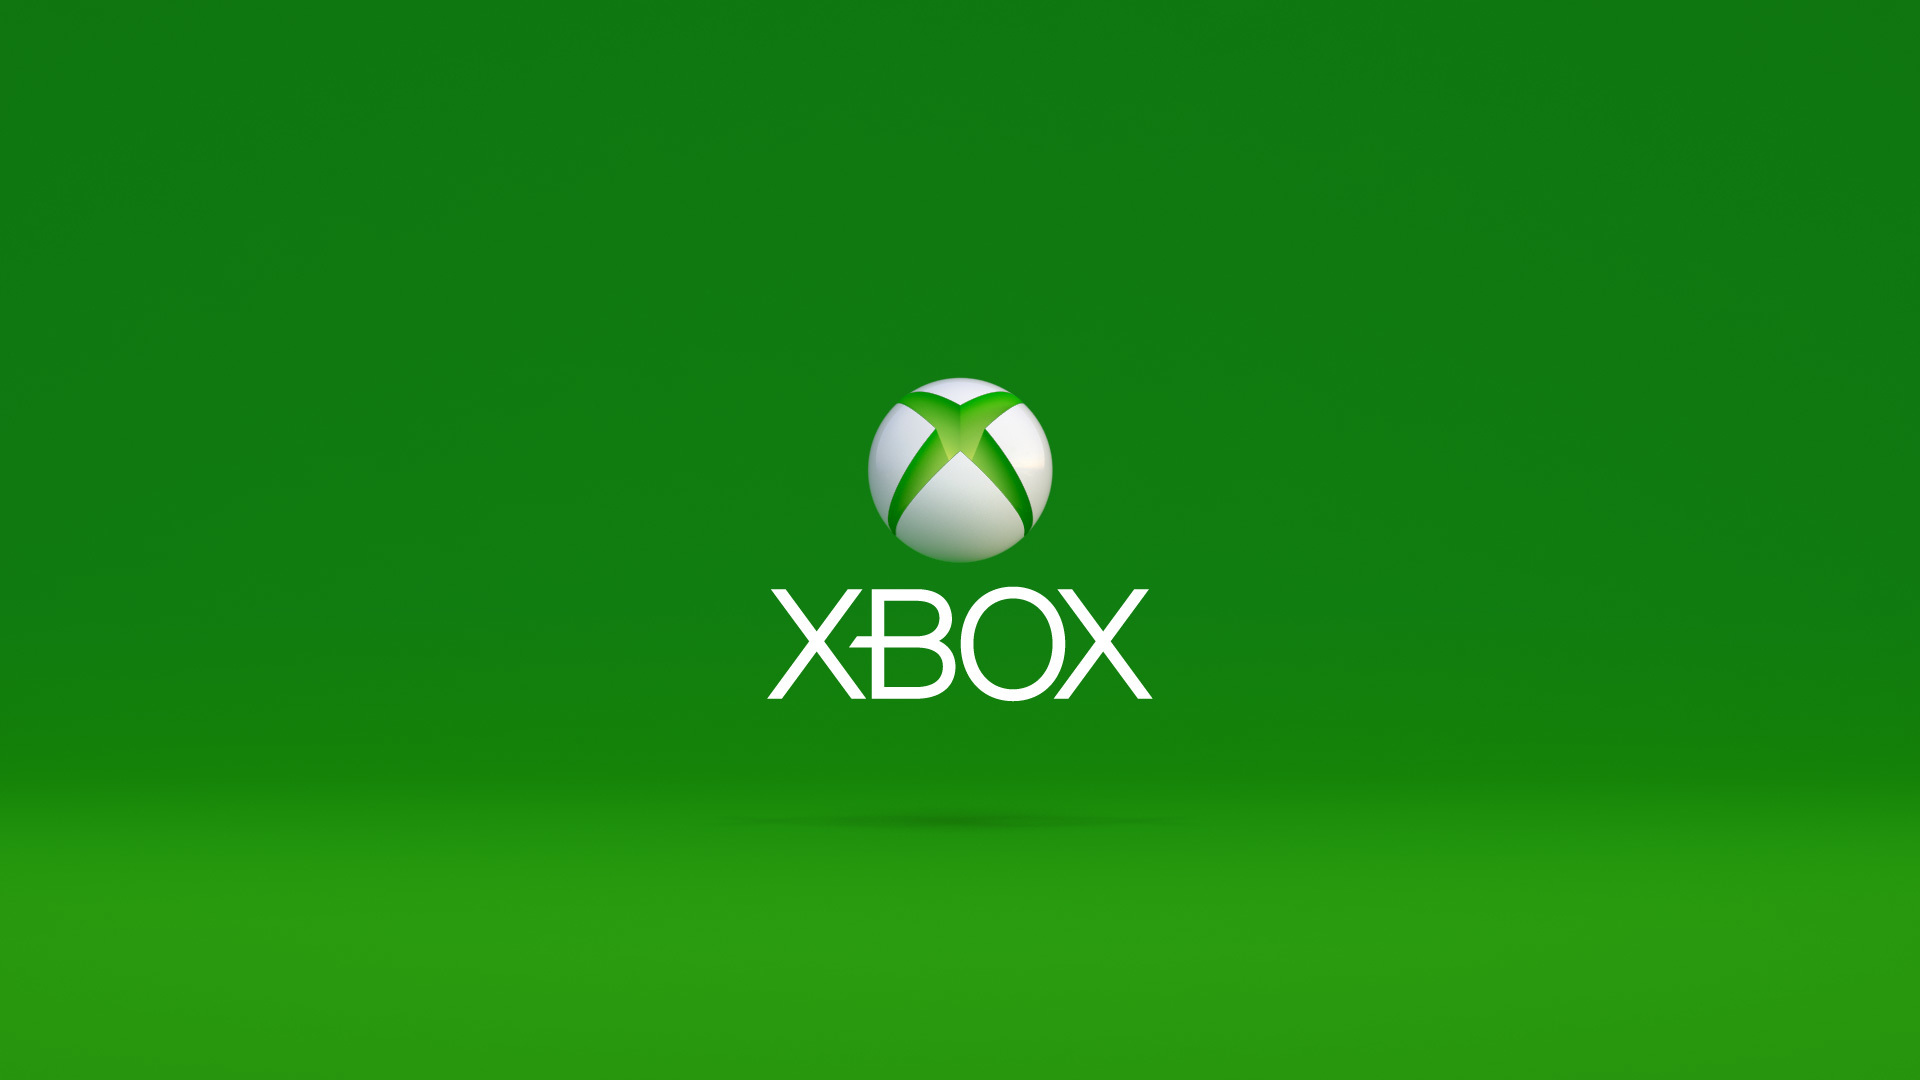 Microsoft ทำยอดขาย Xbox ในญี่ปุ่นได้ไม่ค่อยดีนักในตลอด 20 ปีที่ผ่านมา โดยมียอดขายรวมอยู่ที่ 2.3 ล้านเครื่องเท่านั้น